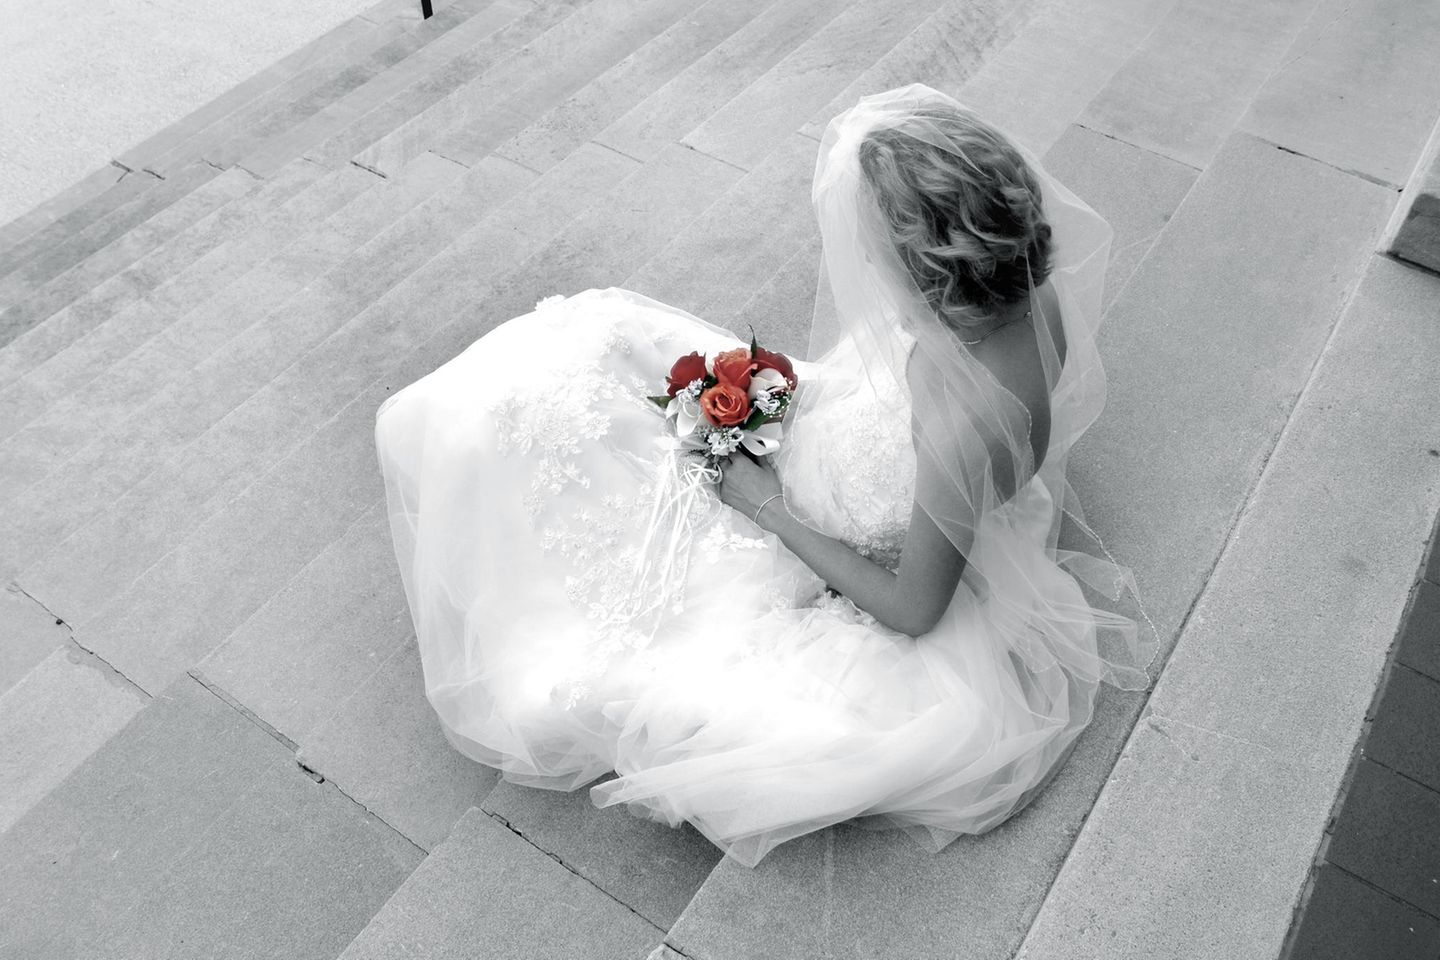 Das passiert, wenn bei Trauungen jemand widerspricht statt zu schweigen: Braut sitzt alleine mit Brautstrauß auf der Treppe